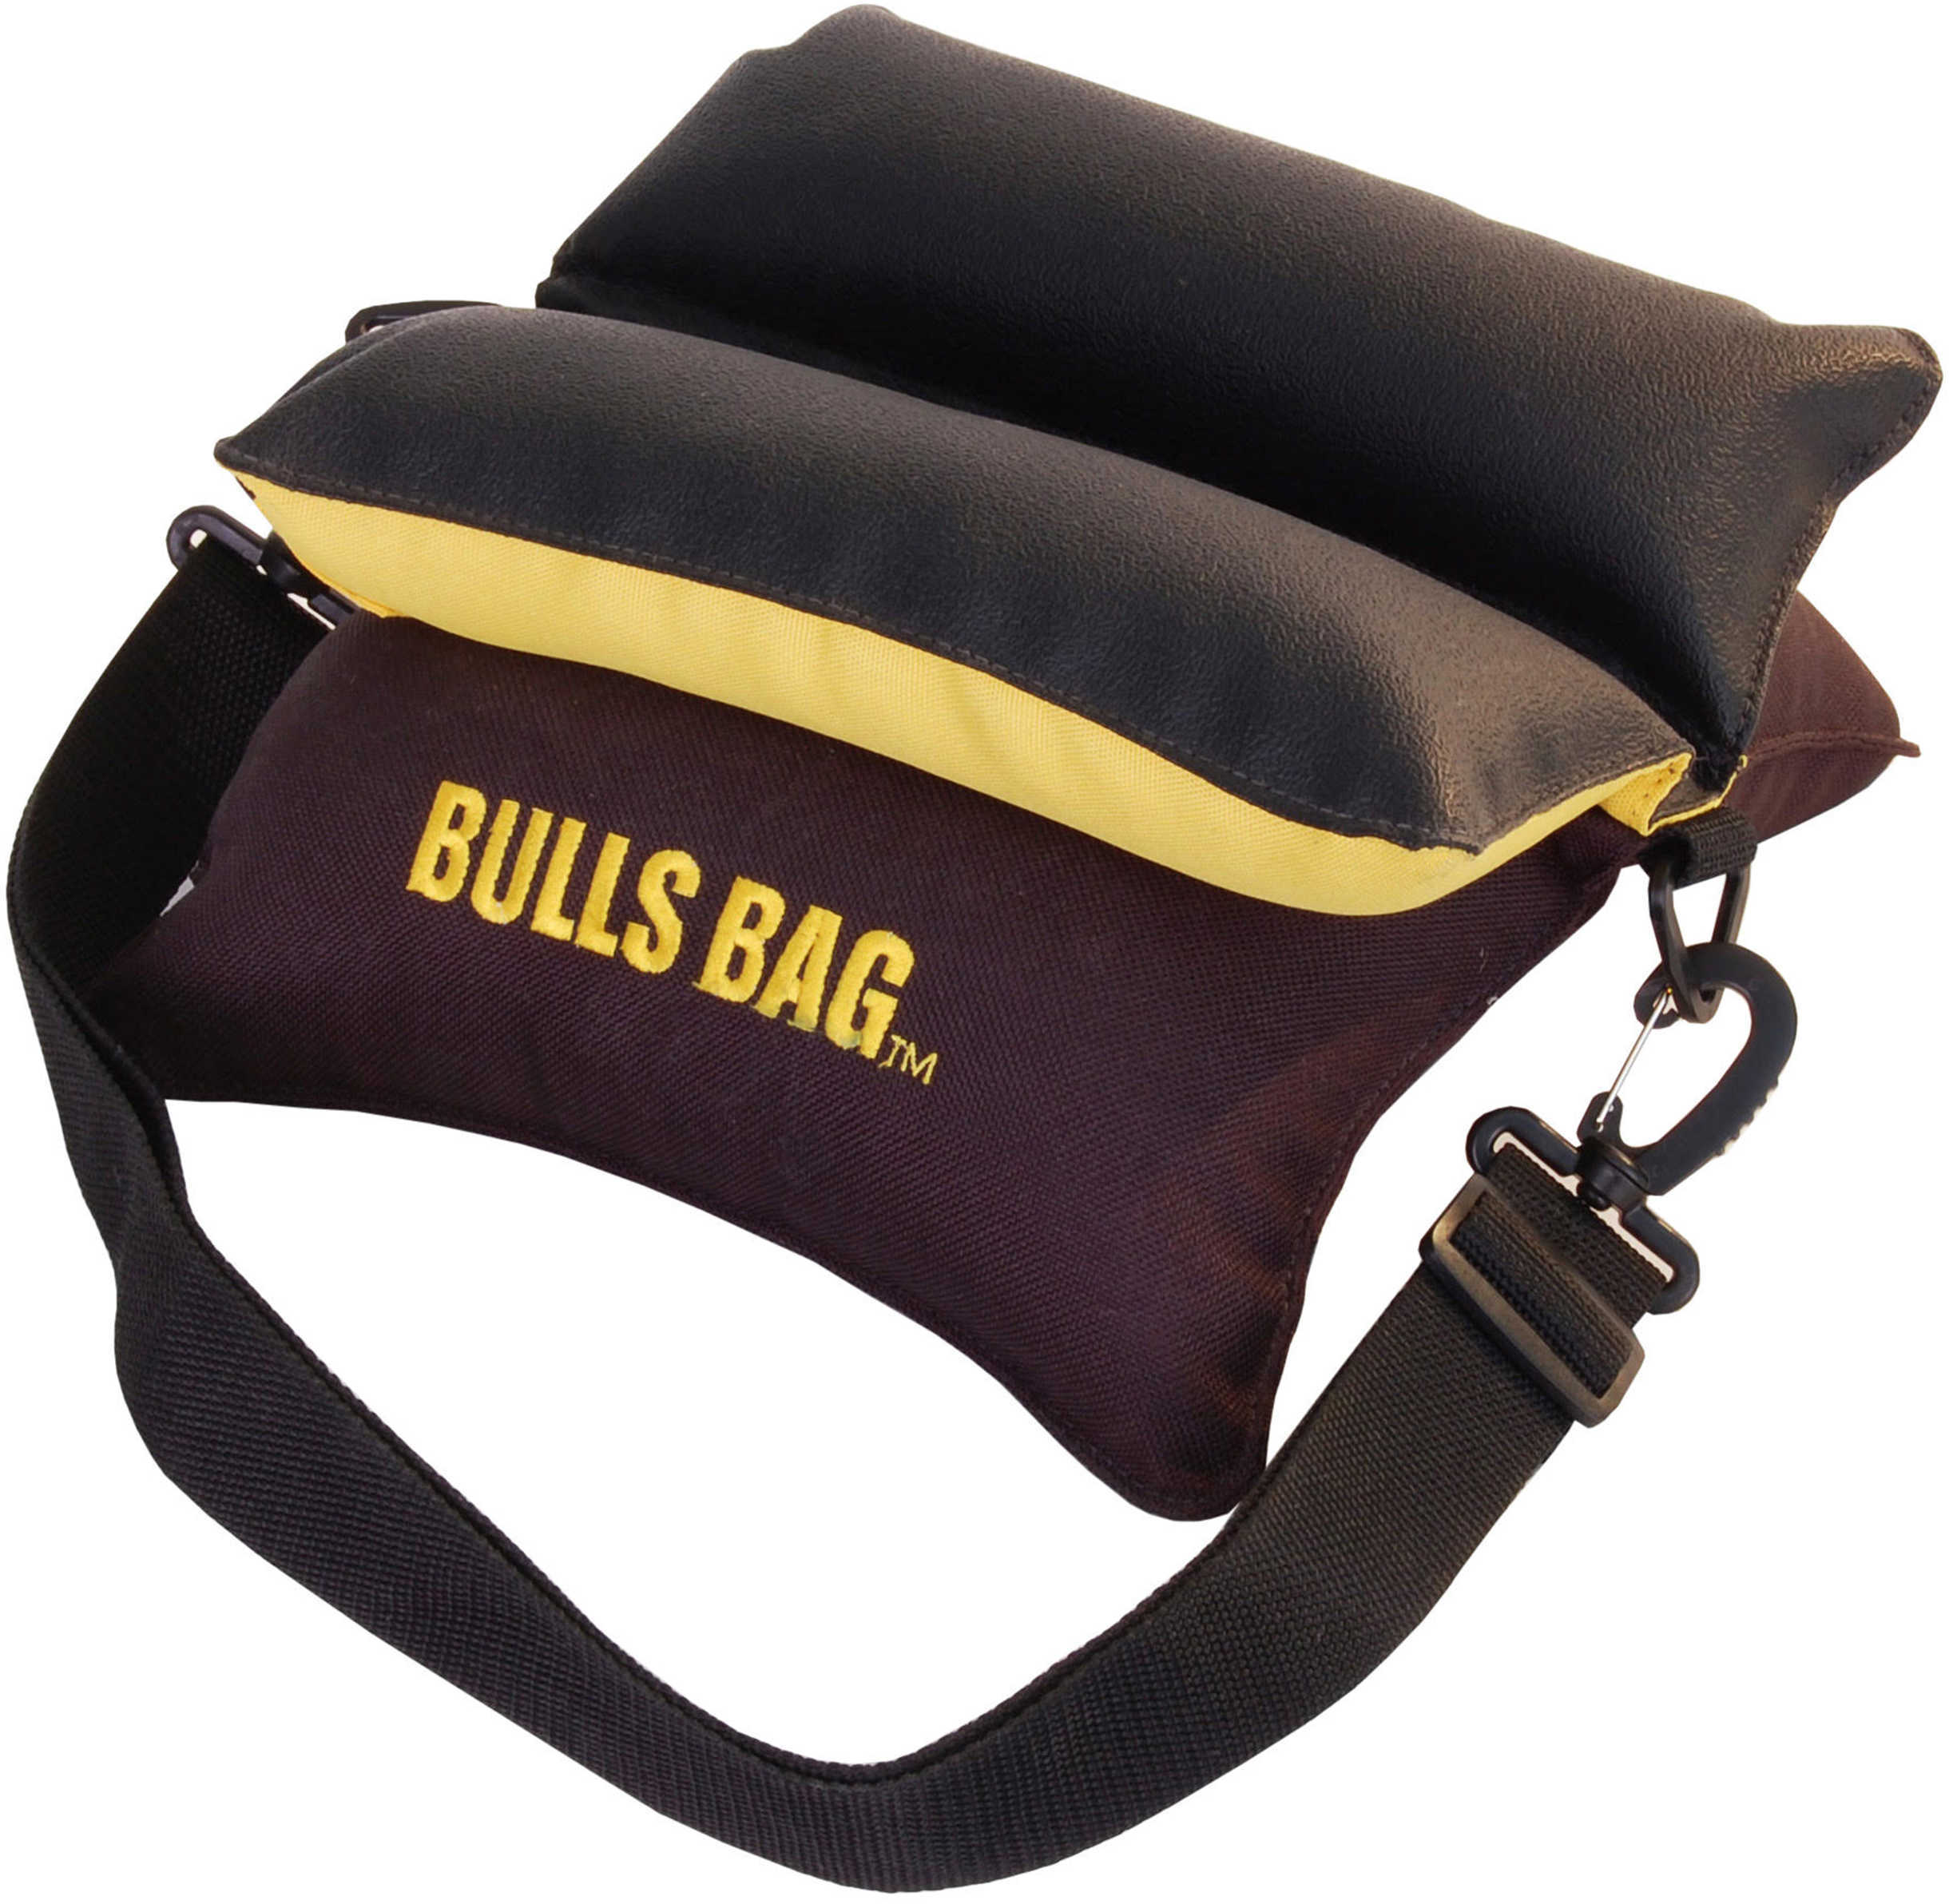 Uncle Buds 10" Black/Gold Bulls Bag Rest